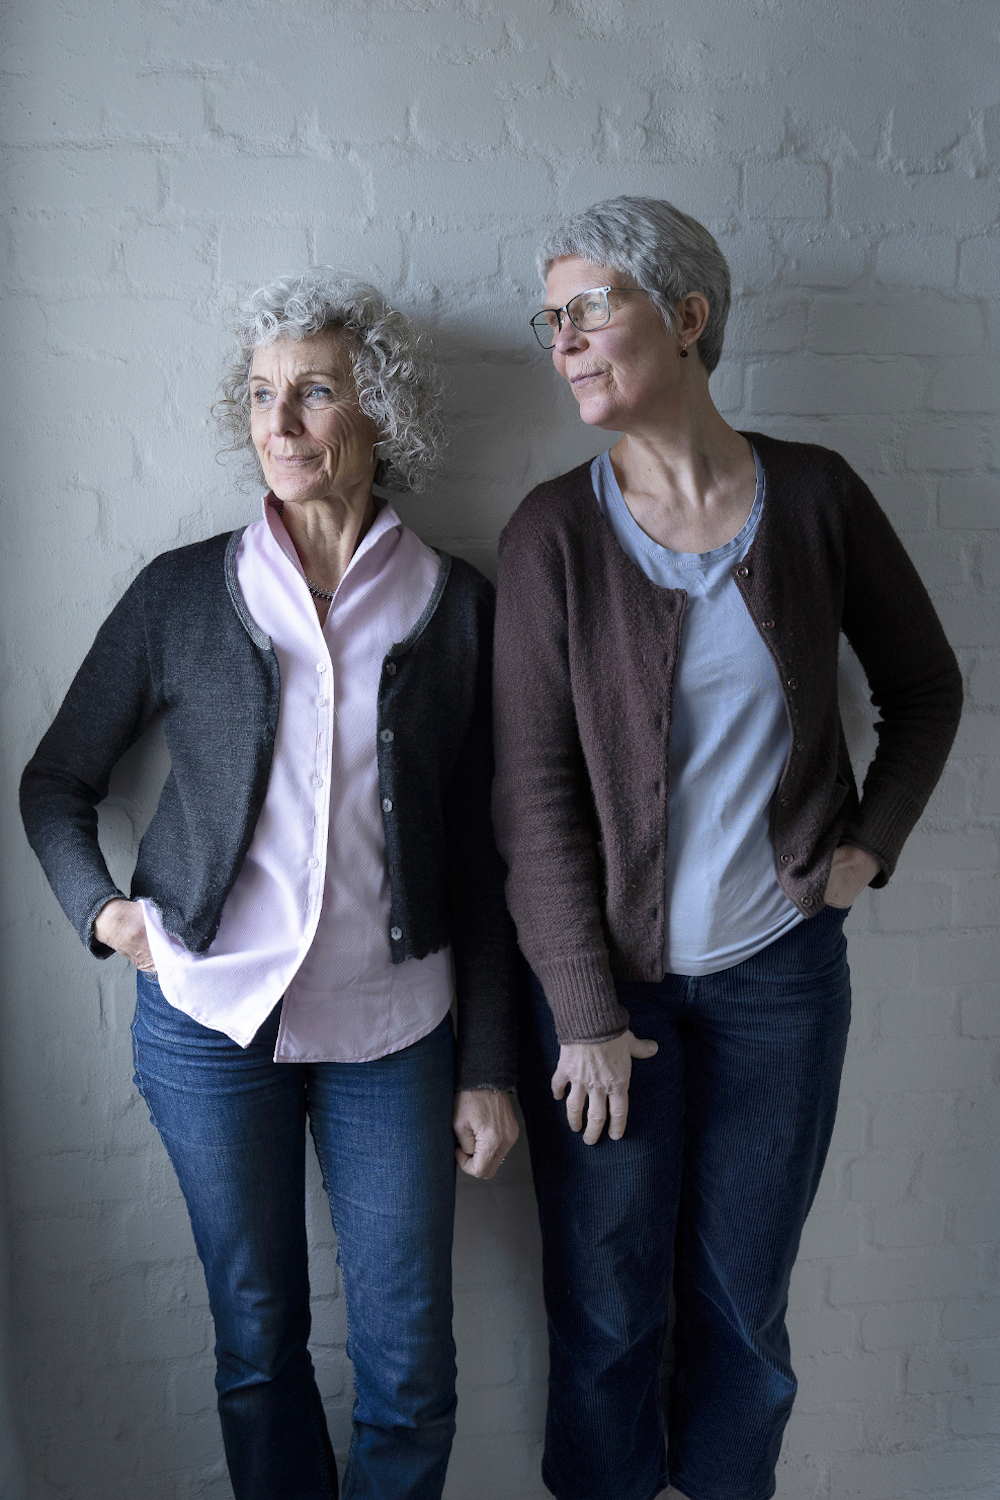 Ina Hattebier und Ute Arndt haben in Hamburg das Netzwerk Trauerkultur gegründet. Die beiden älterern grauhaarigen Frauen stehen im Treppenhaus vor einer weißen Ziegelwand und sehen beide nach links aus dem Fenster.